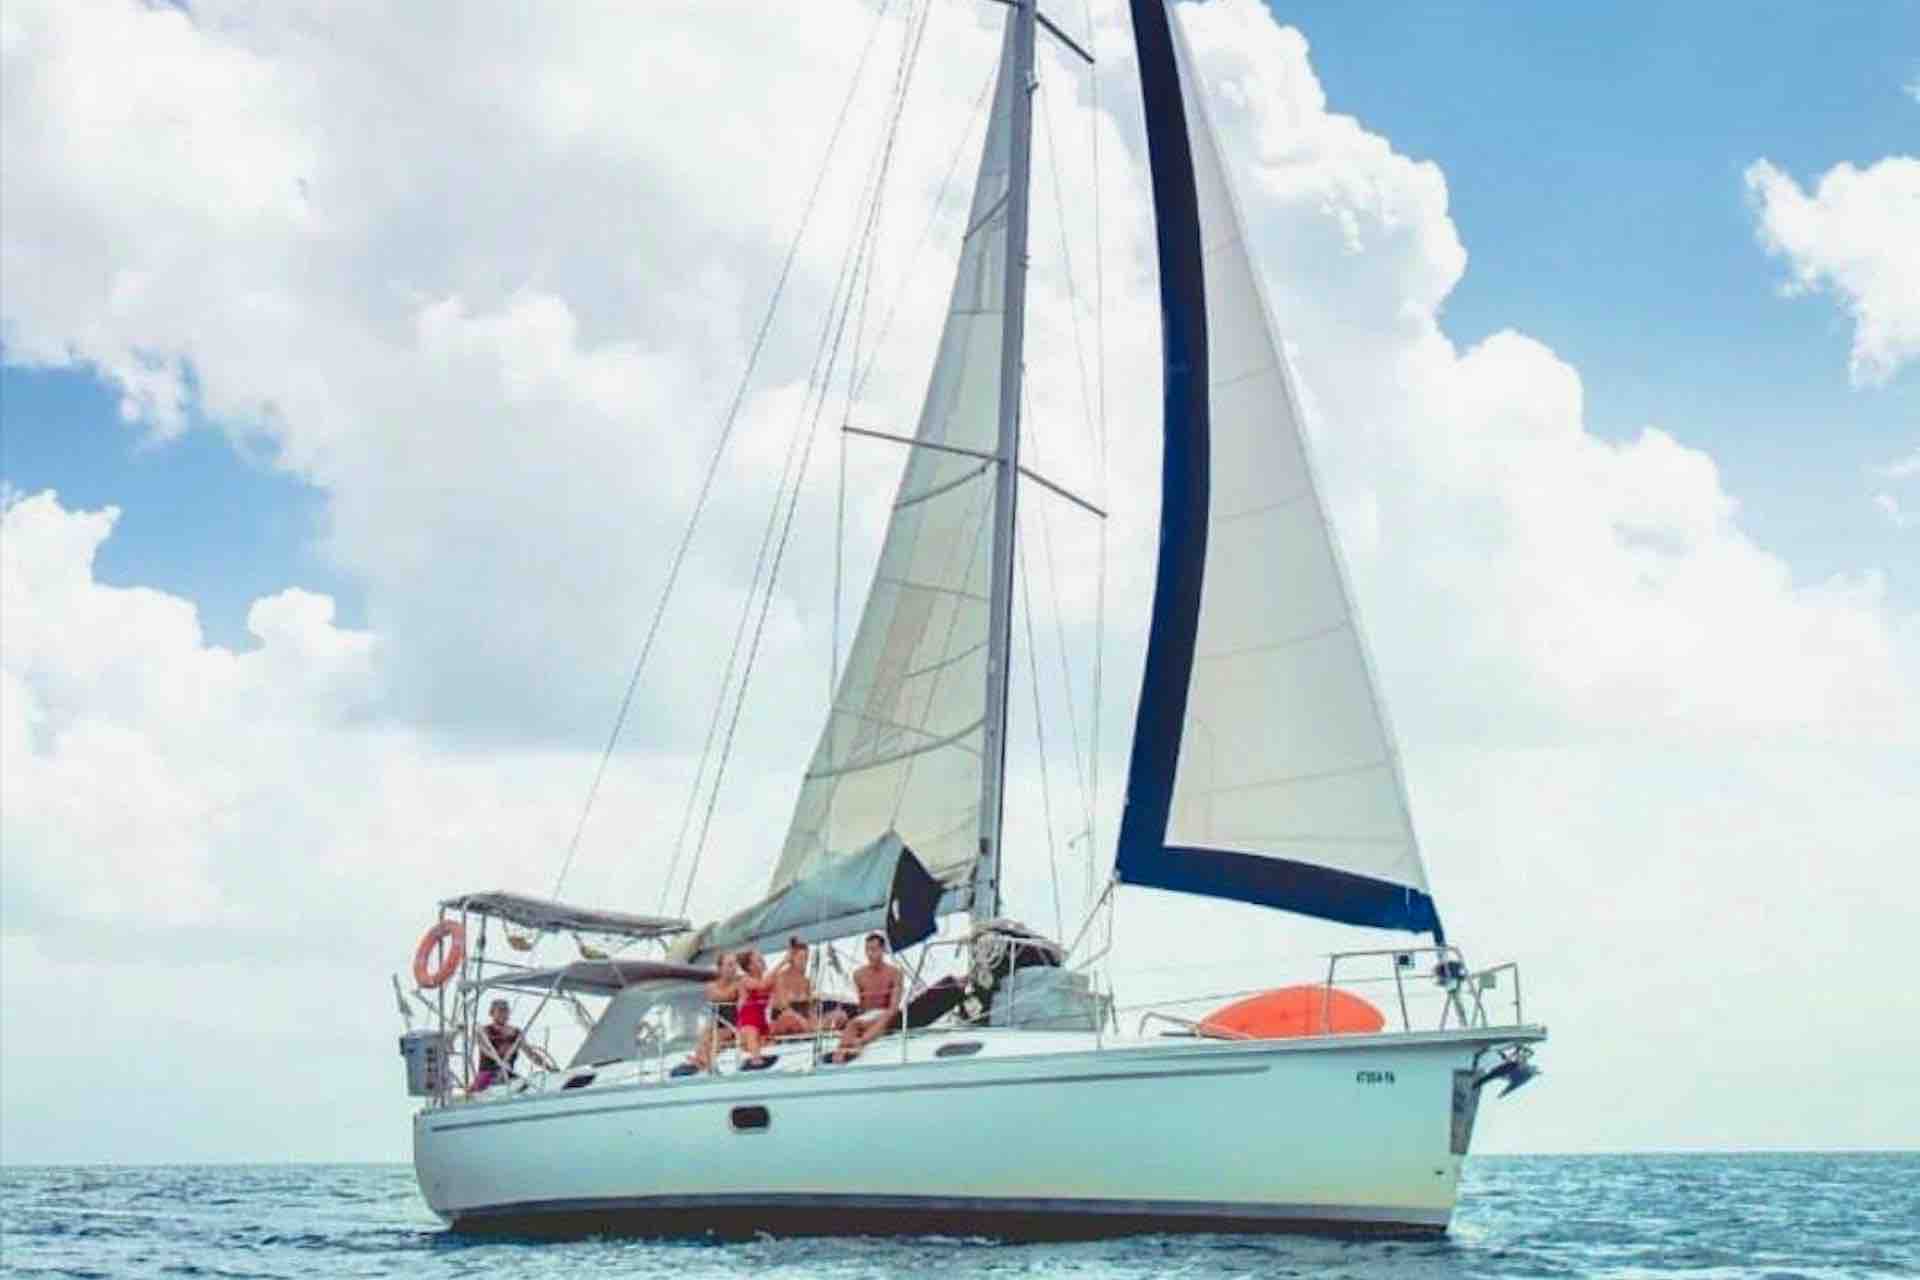 San Blas sailing charter sailboat sailing with guests